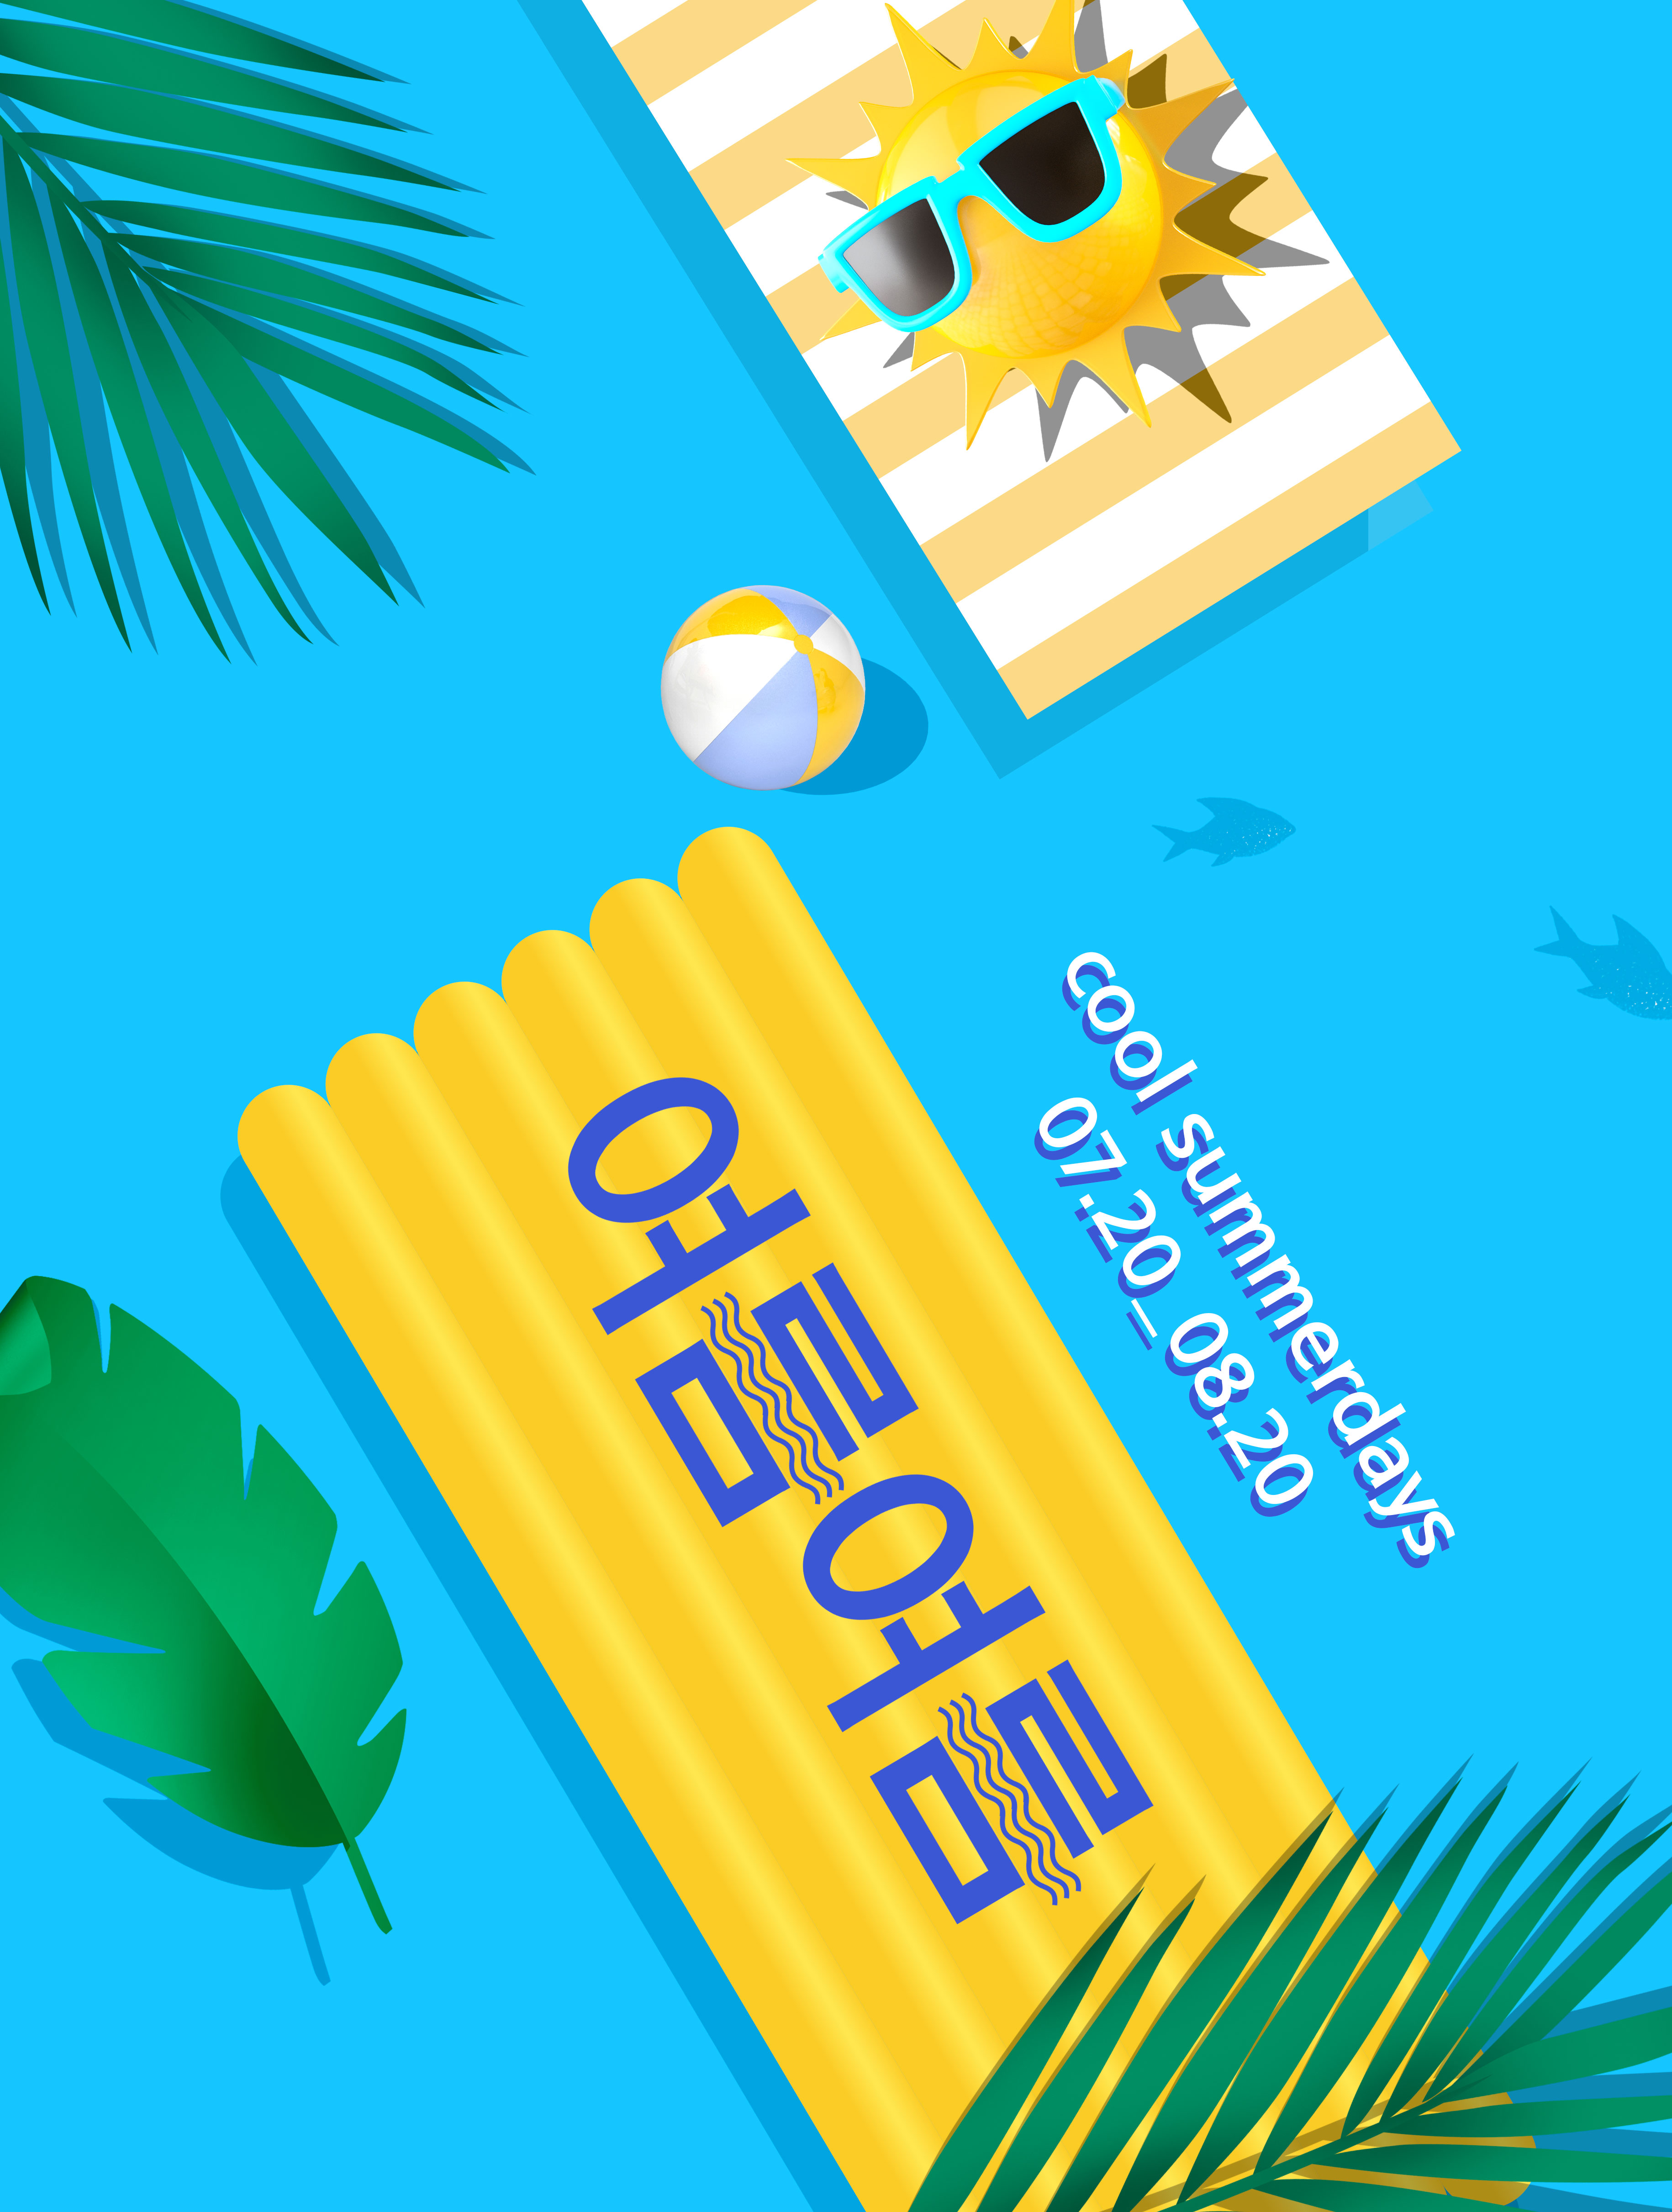 酷暑夏季度假活动广告海报设计套装[PSD]插图(1)